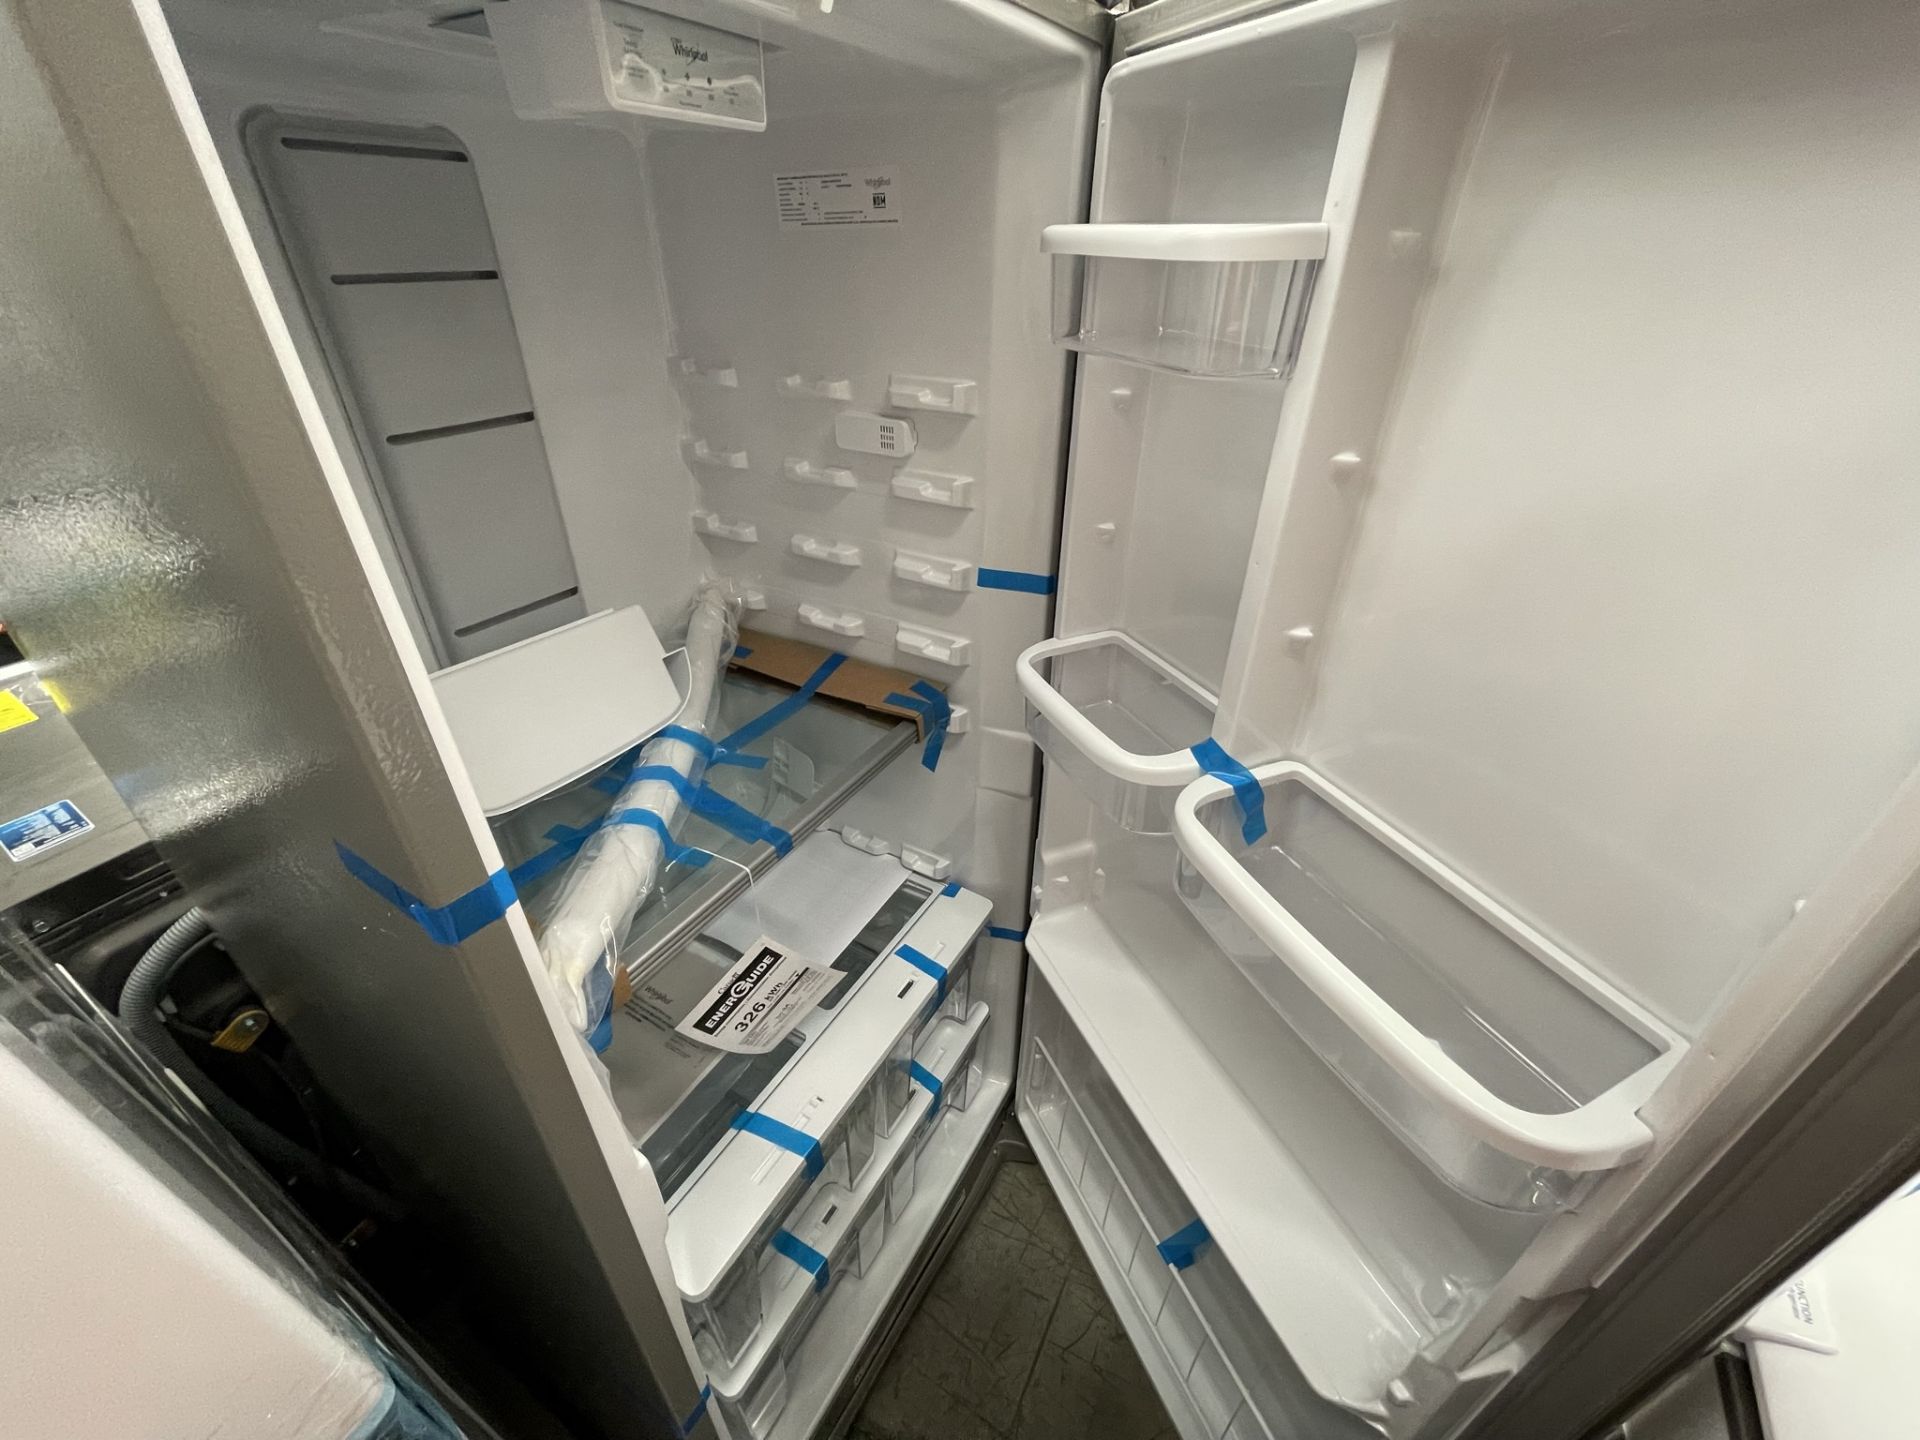 (EQUIPO NUEVO) 1 Refrigerador Marca WHIRLPOOL, Modelo WSR57R18DM, Serie 905370, Color GRIS, (Nuevo, - Image 7 of 8